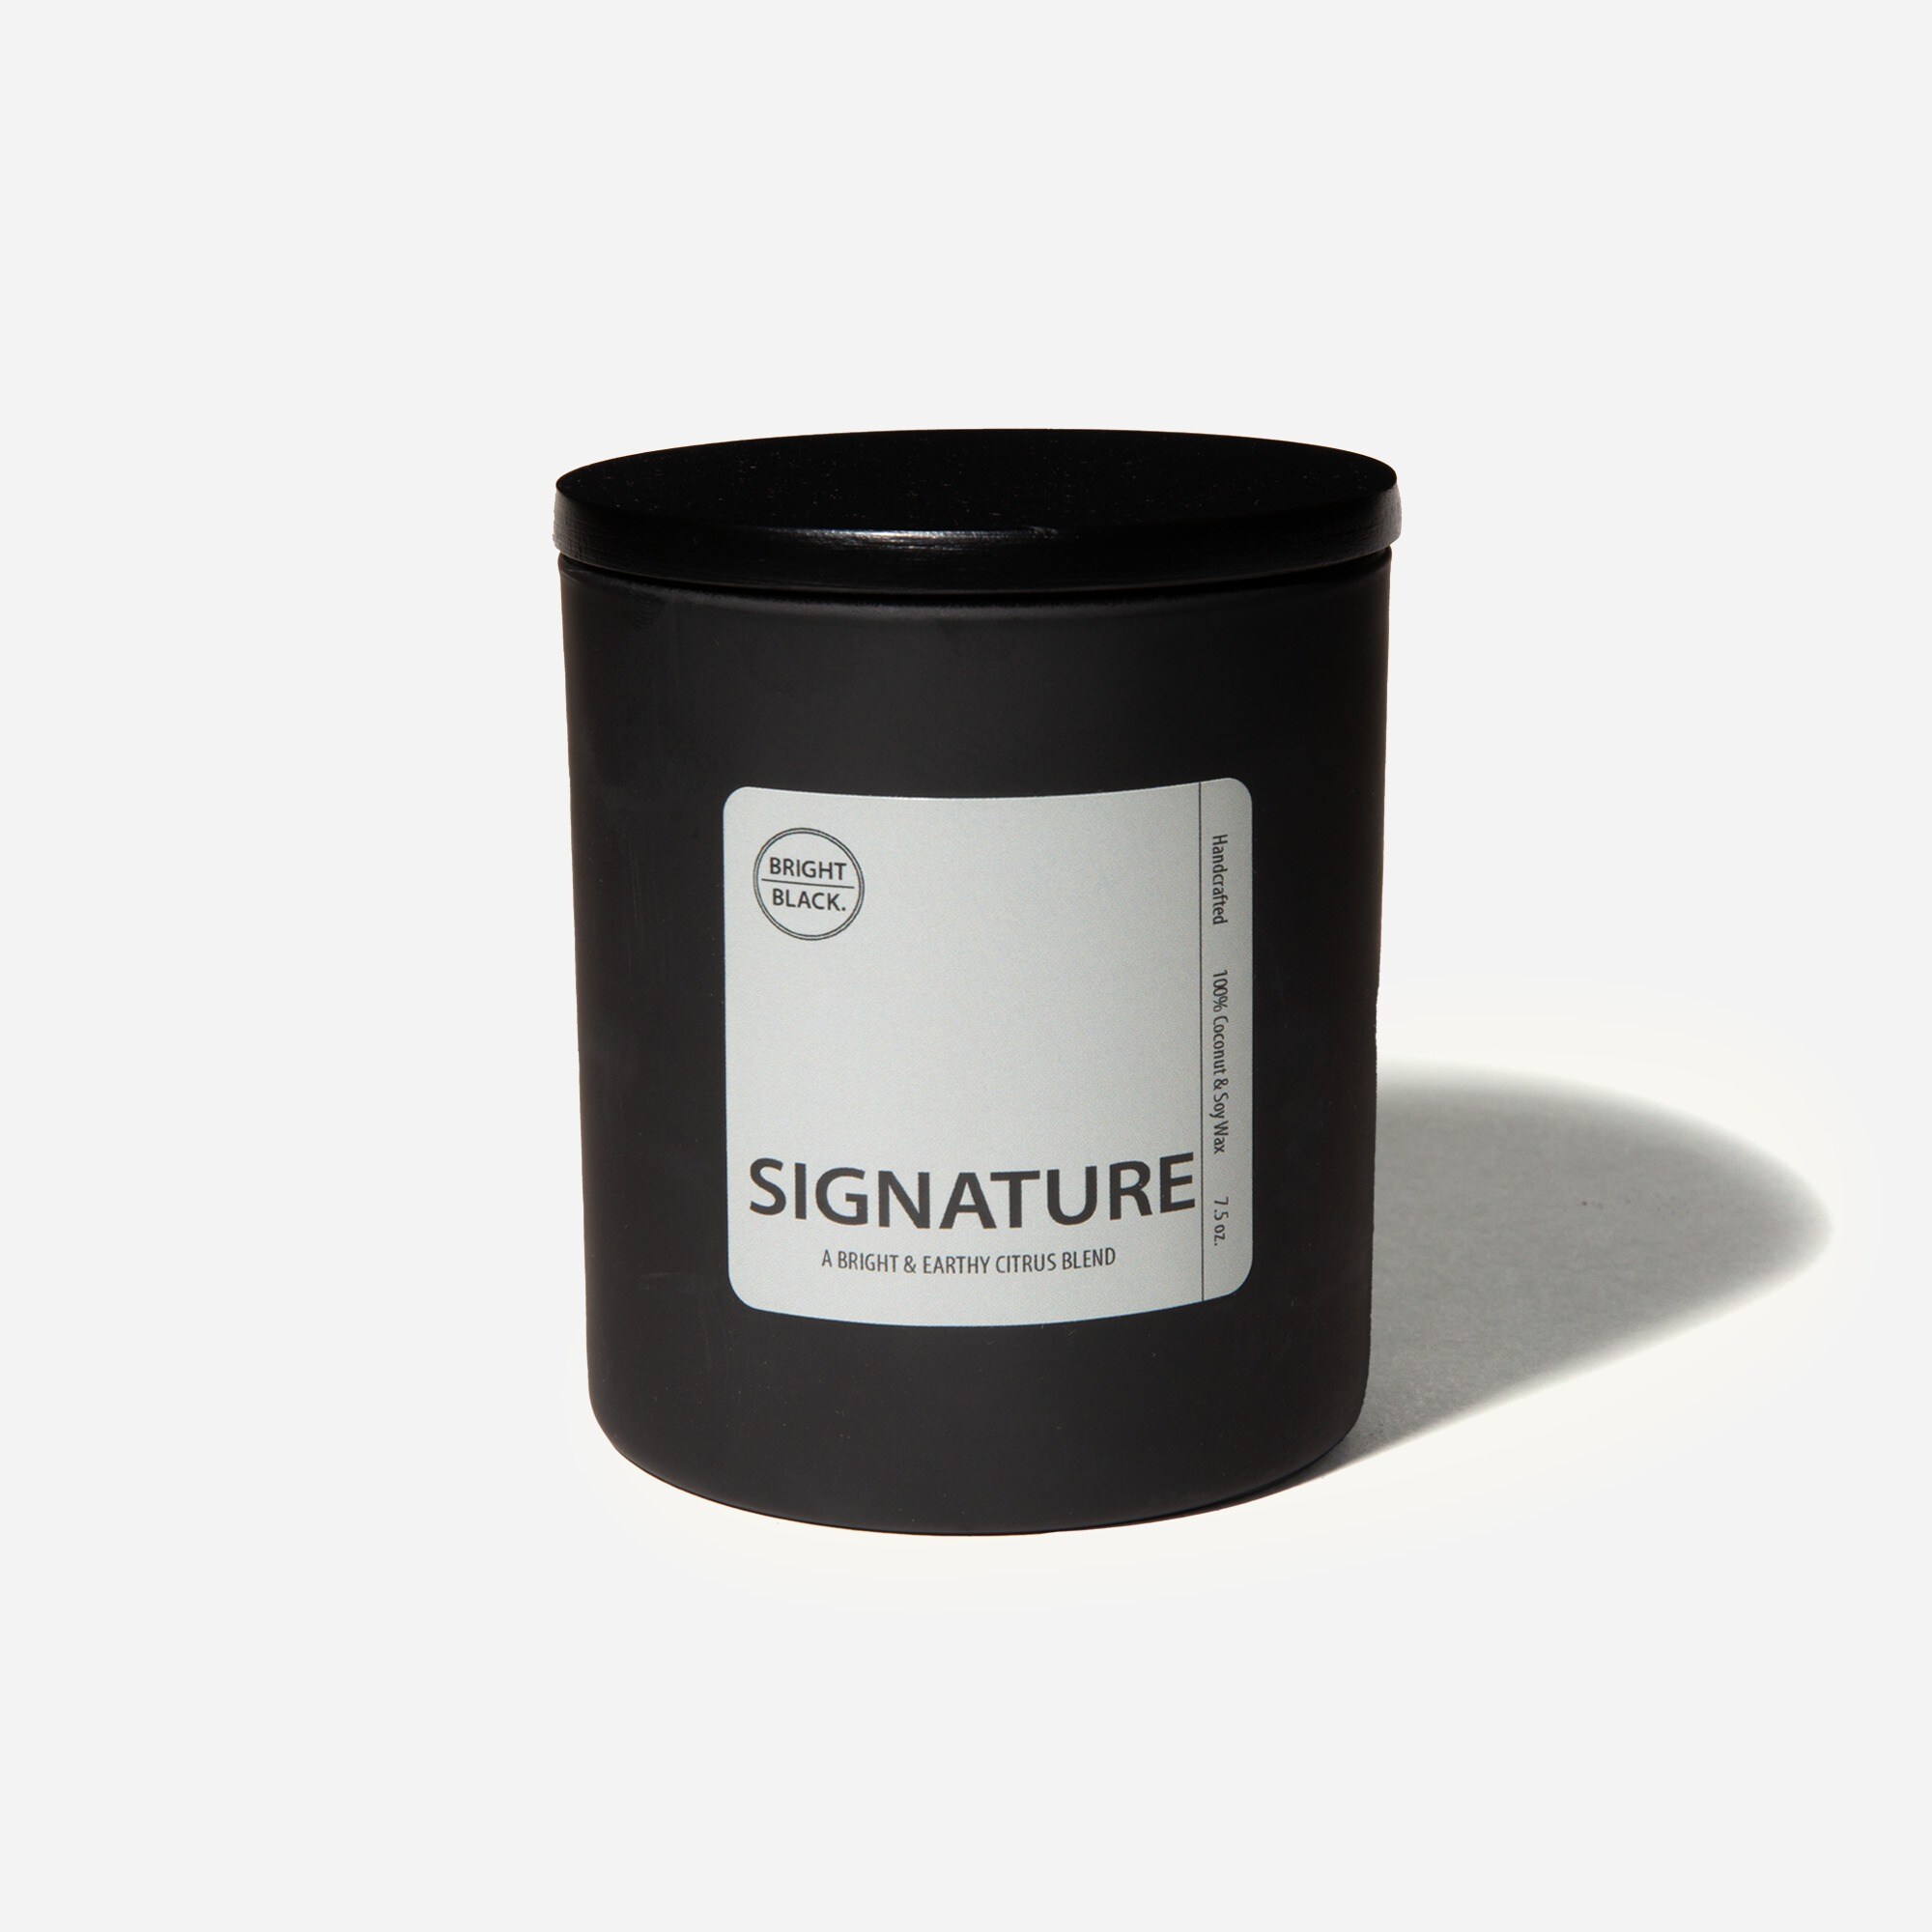  Bright Black™ signature candle